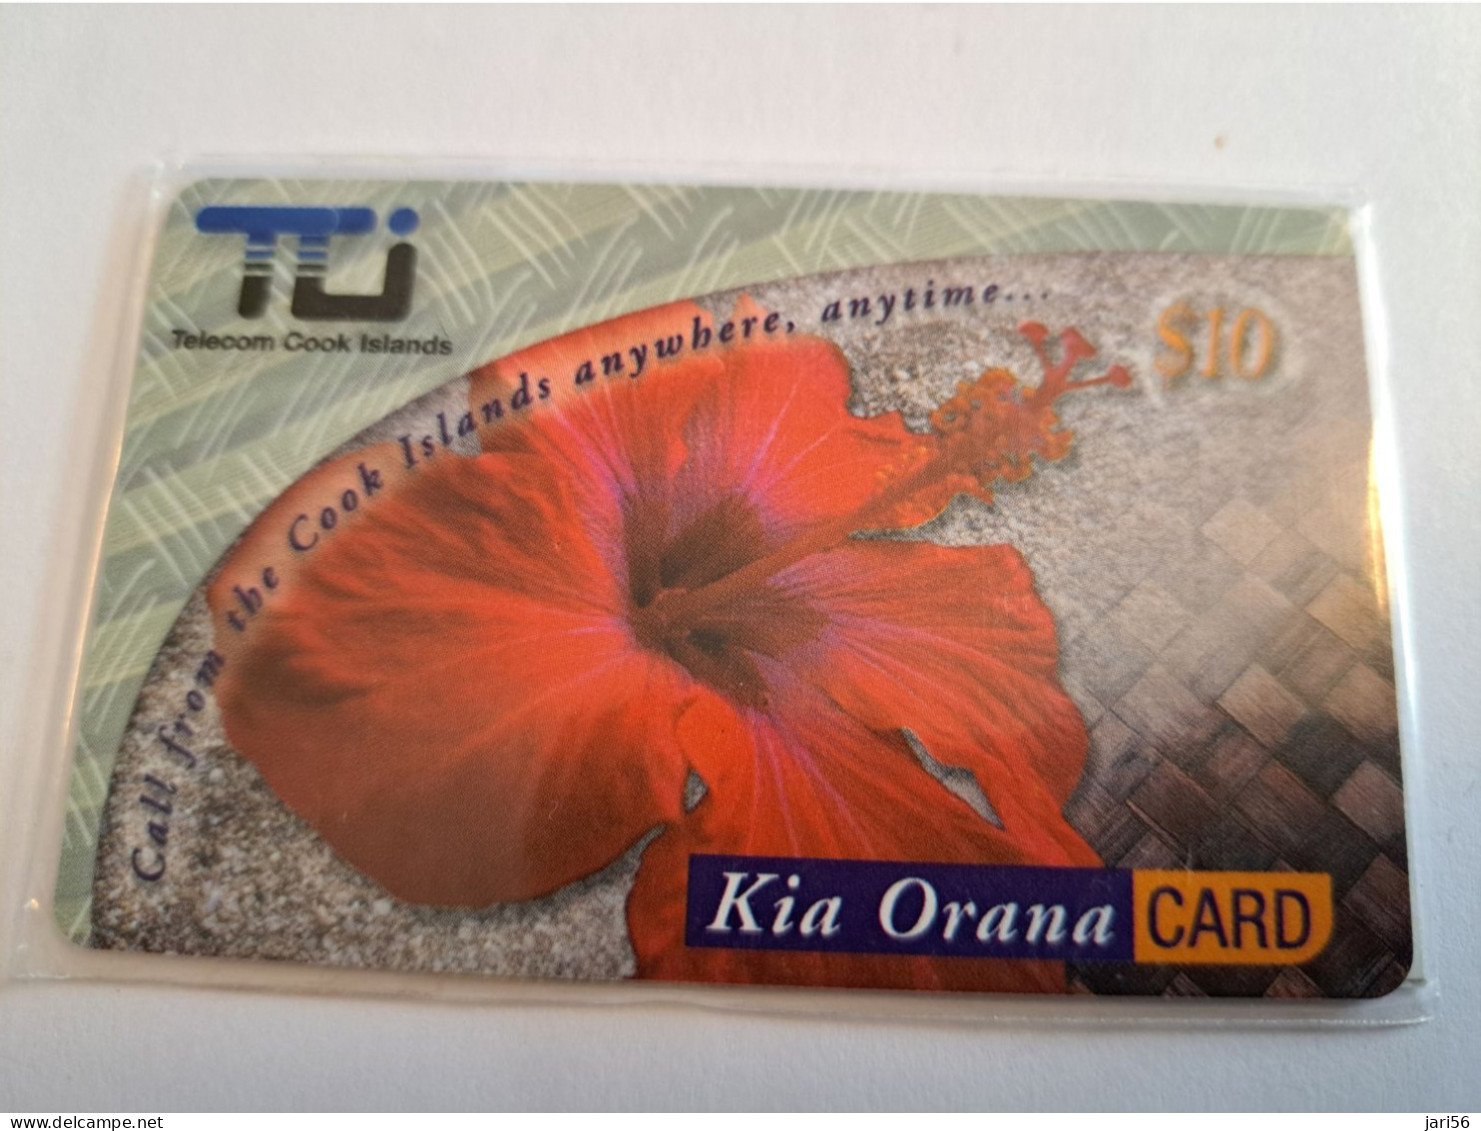 COOK ISLANDS / PREPAID CARD/  $10,-/ KIA ORANA CARD /TELECOM COOK ISLANDS/ HIBISCUS FLOWER/ MINT IN WRAPPER   ** 16569** - Cook Islands